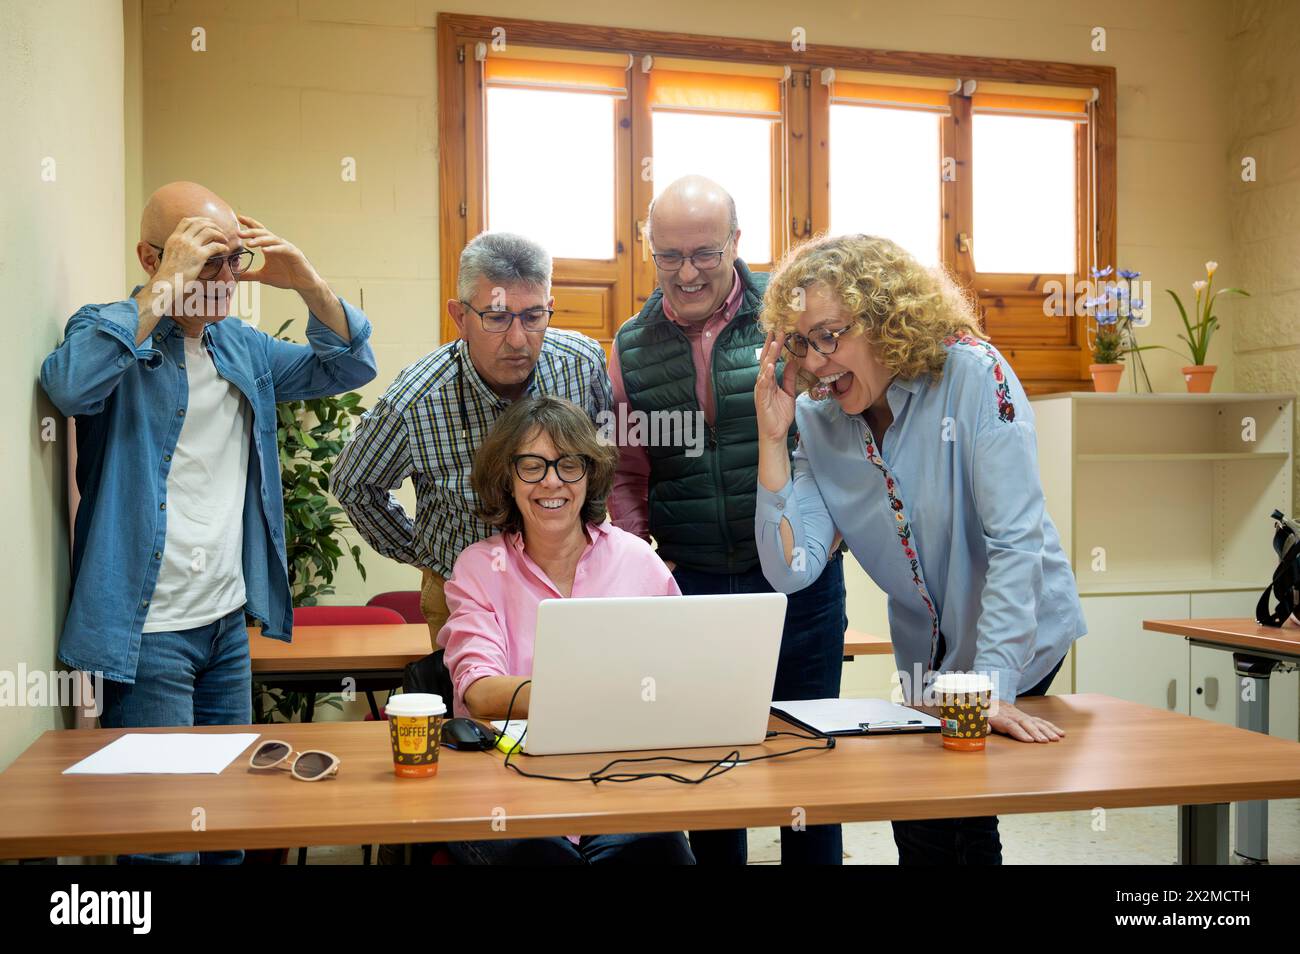 Un gruppo di allegri adulti anziani si riunisce intorno a un computer portatile con espressioni animate, condividendo un'esperienza di apprendimento in un accogliente ambiente scolastico Foto Stock